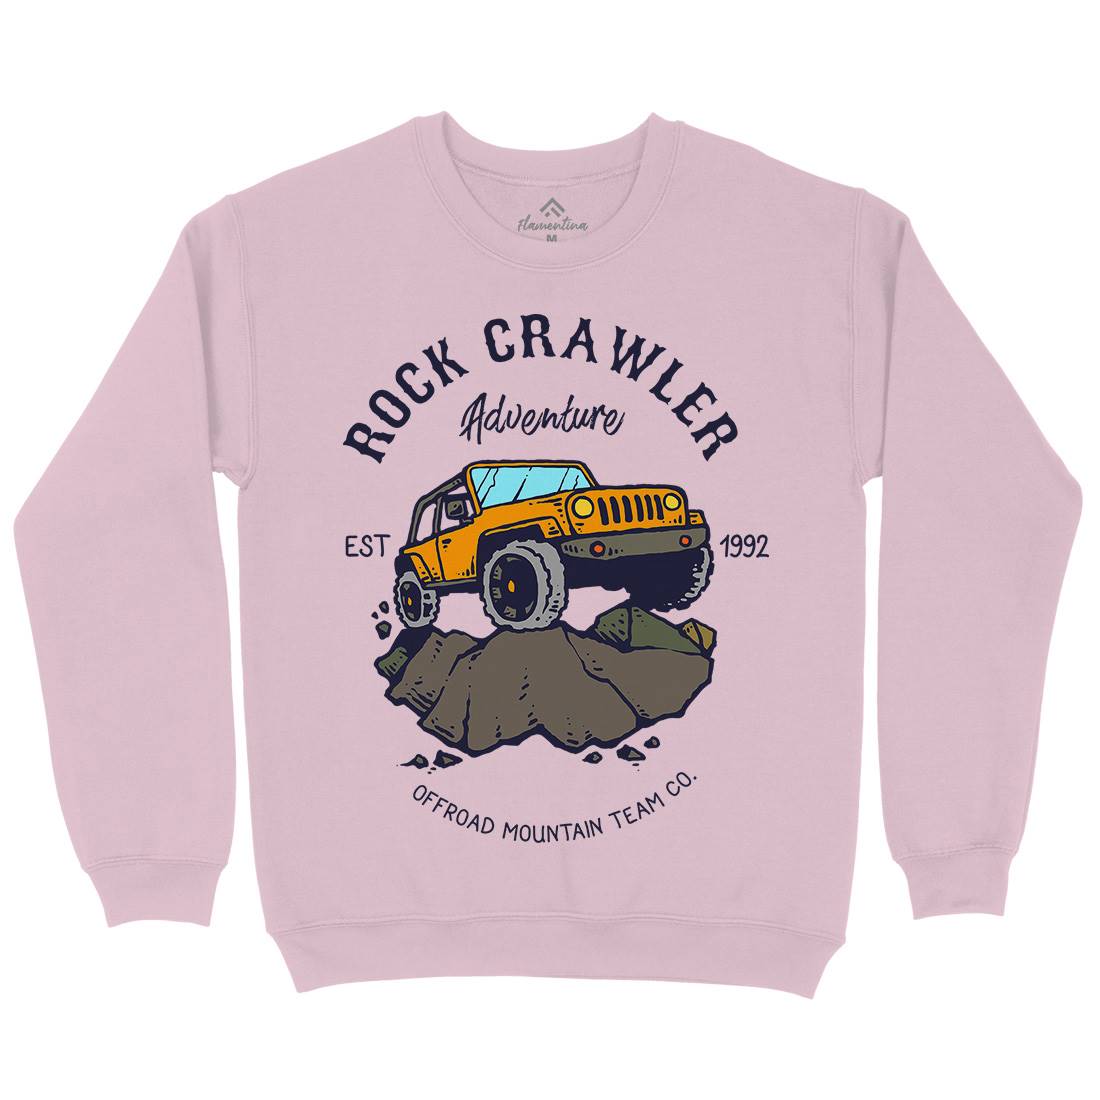 Rock Crawler Adventure Kids Crew Neck Sweatshirt Cars C763